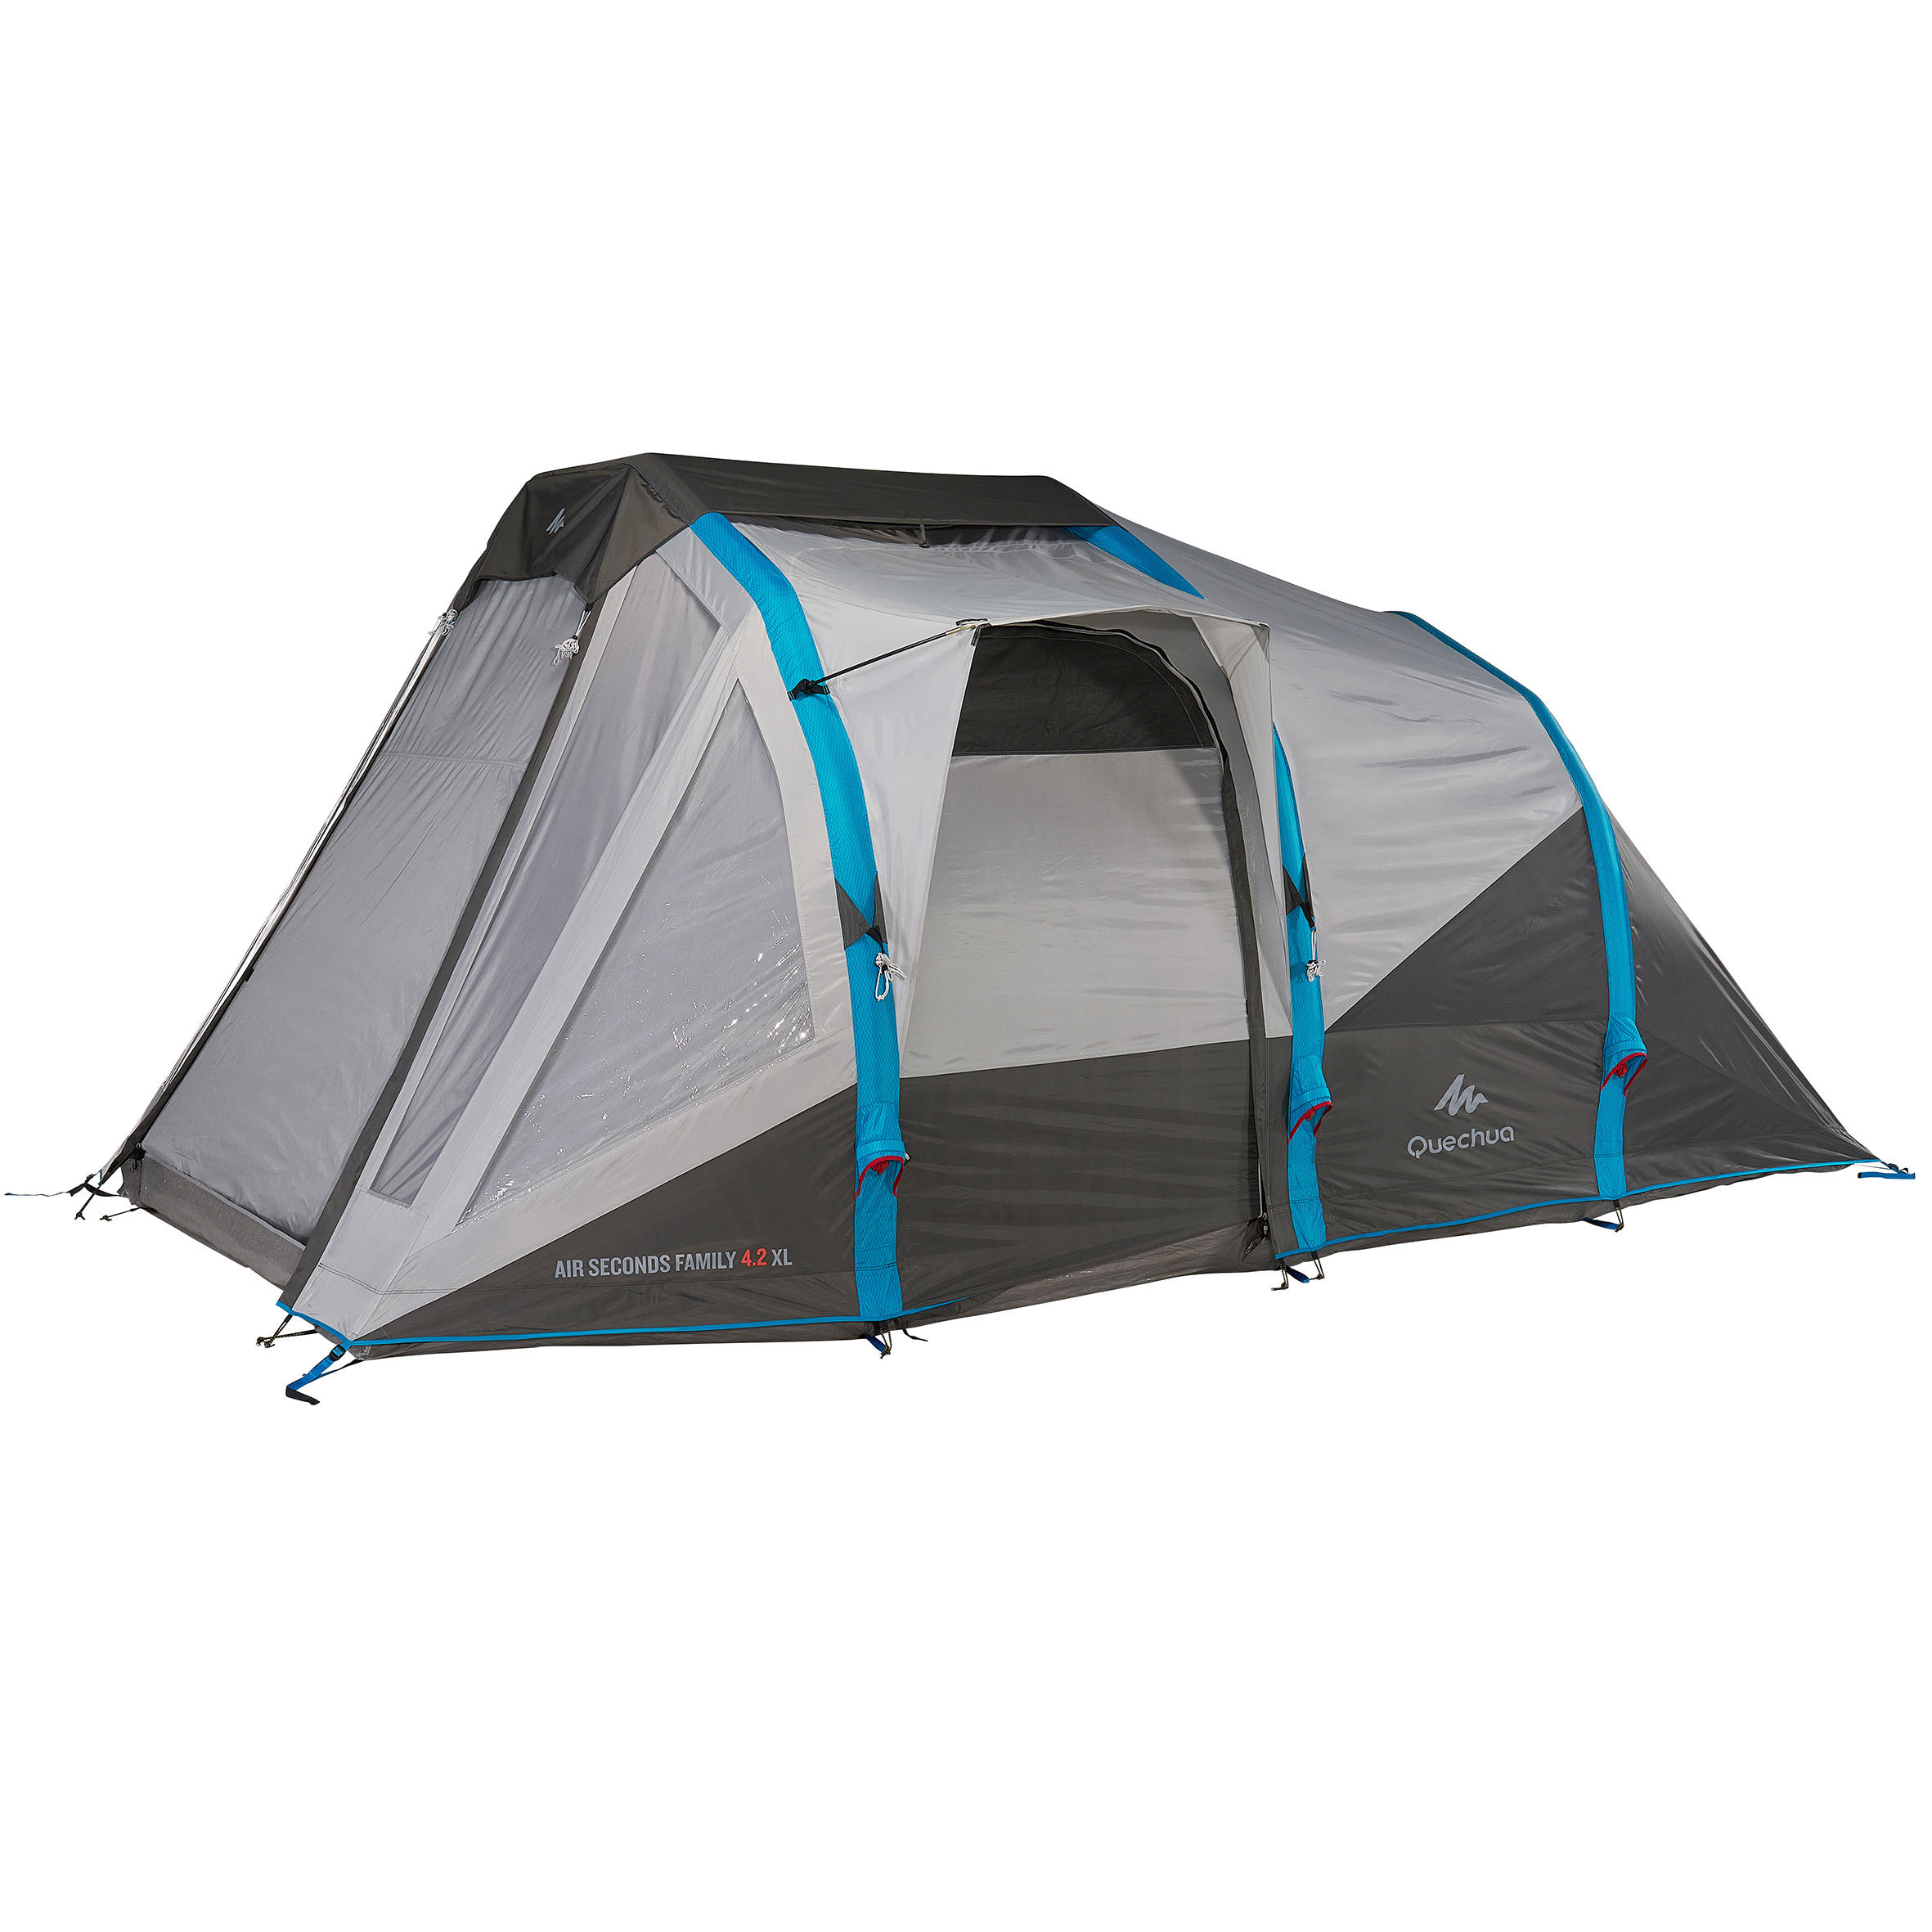 Air Seconds Family 4.2 XL Tent Flysheet 3/3